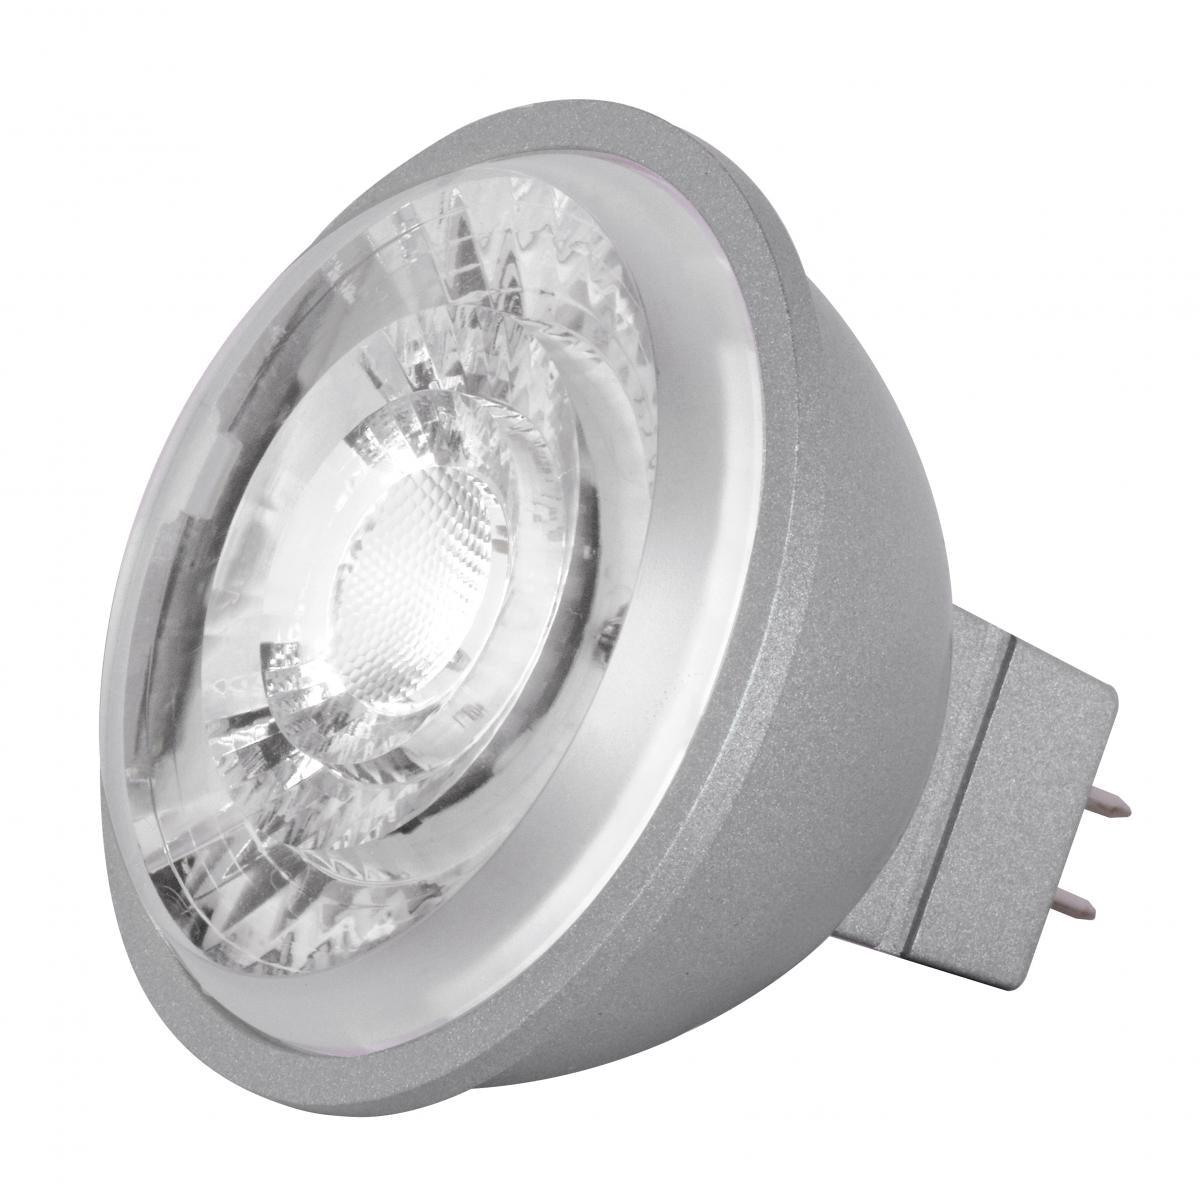 MR16 Reflector LED bulb, 8 watt, 490 Lumens, 3500K, GU5.3 Base, 15 Deg. Spot - Bees Lighting